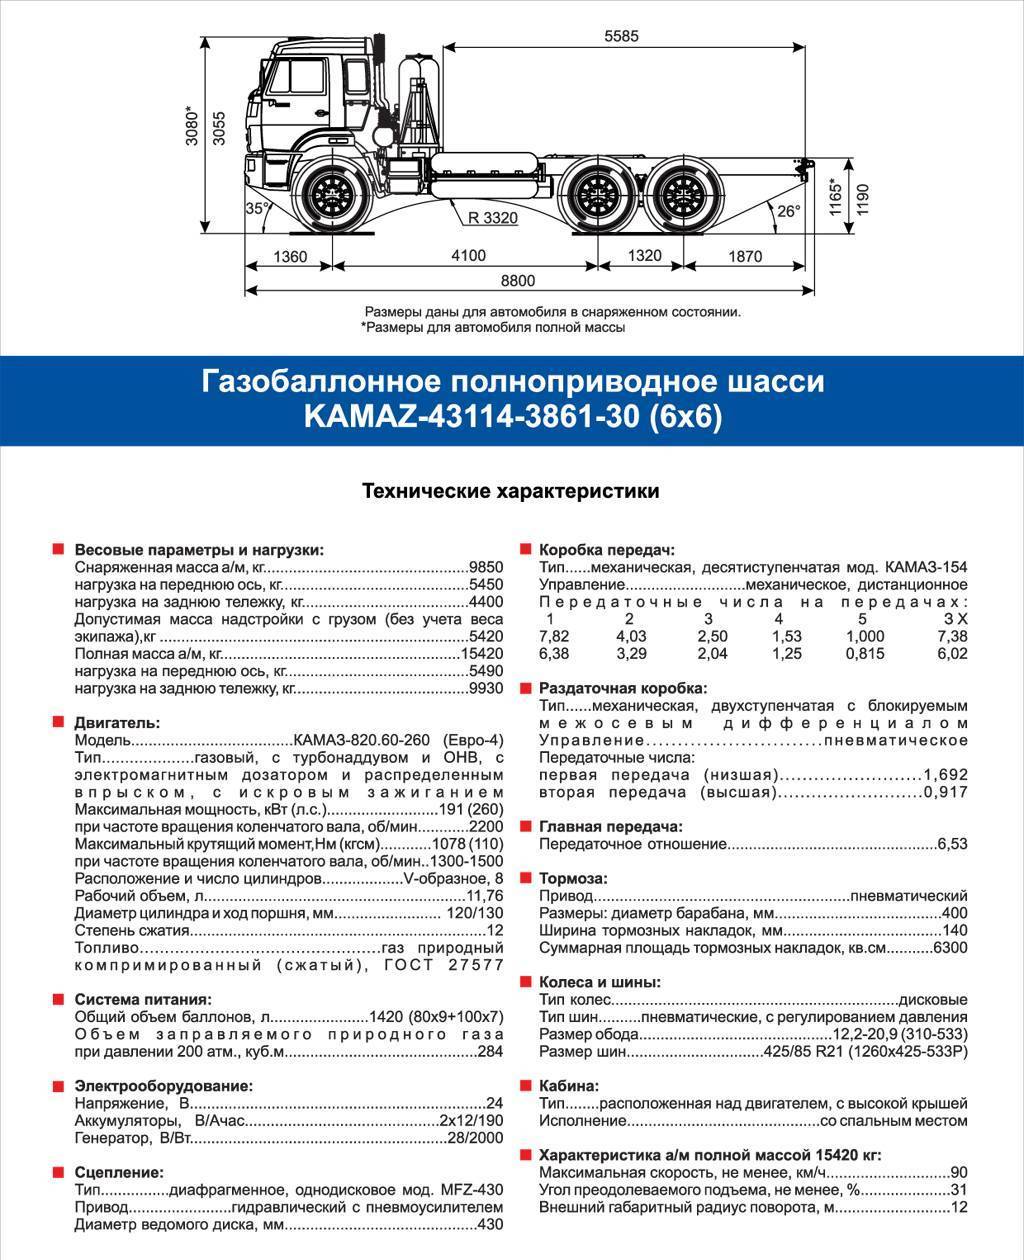 Газ-саз-3507: технические характеристики